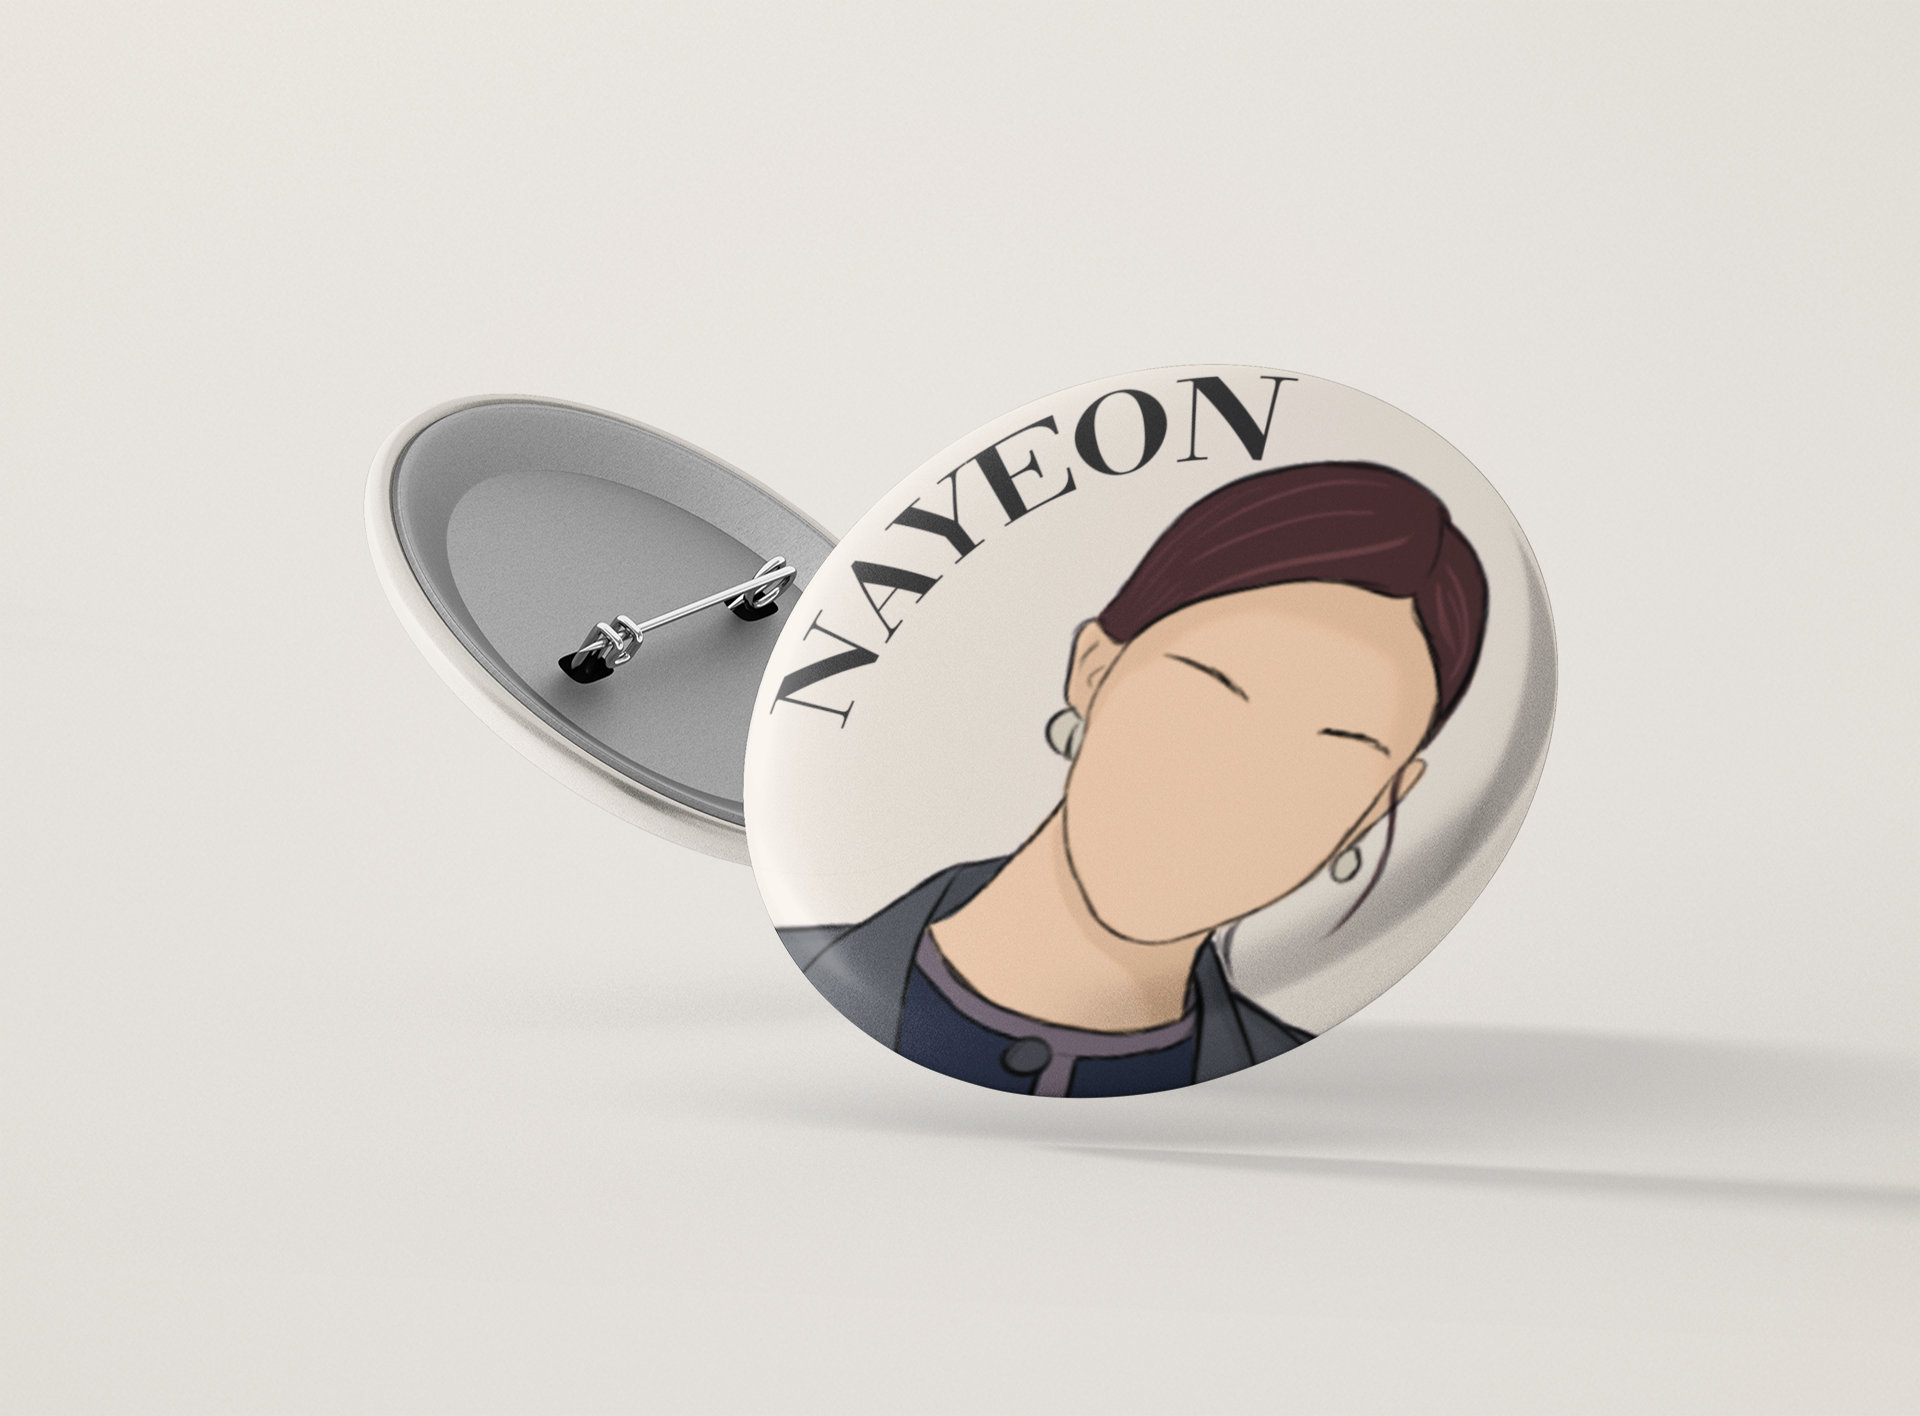 Pin on Nayeon